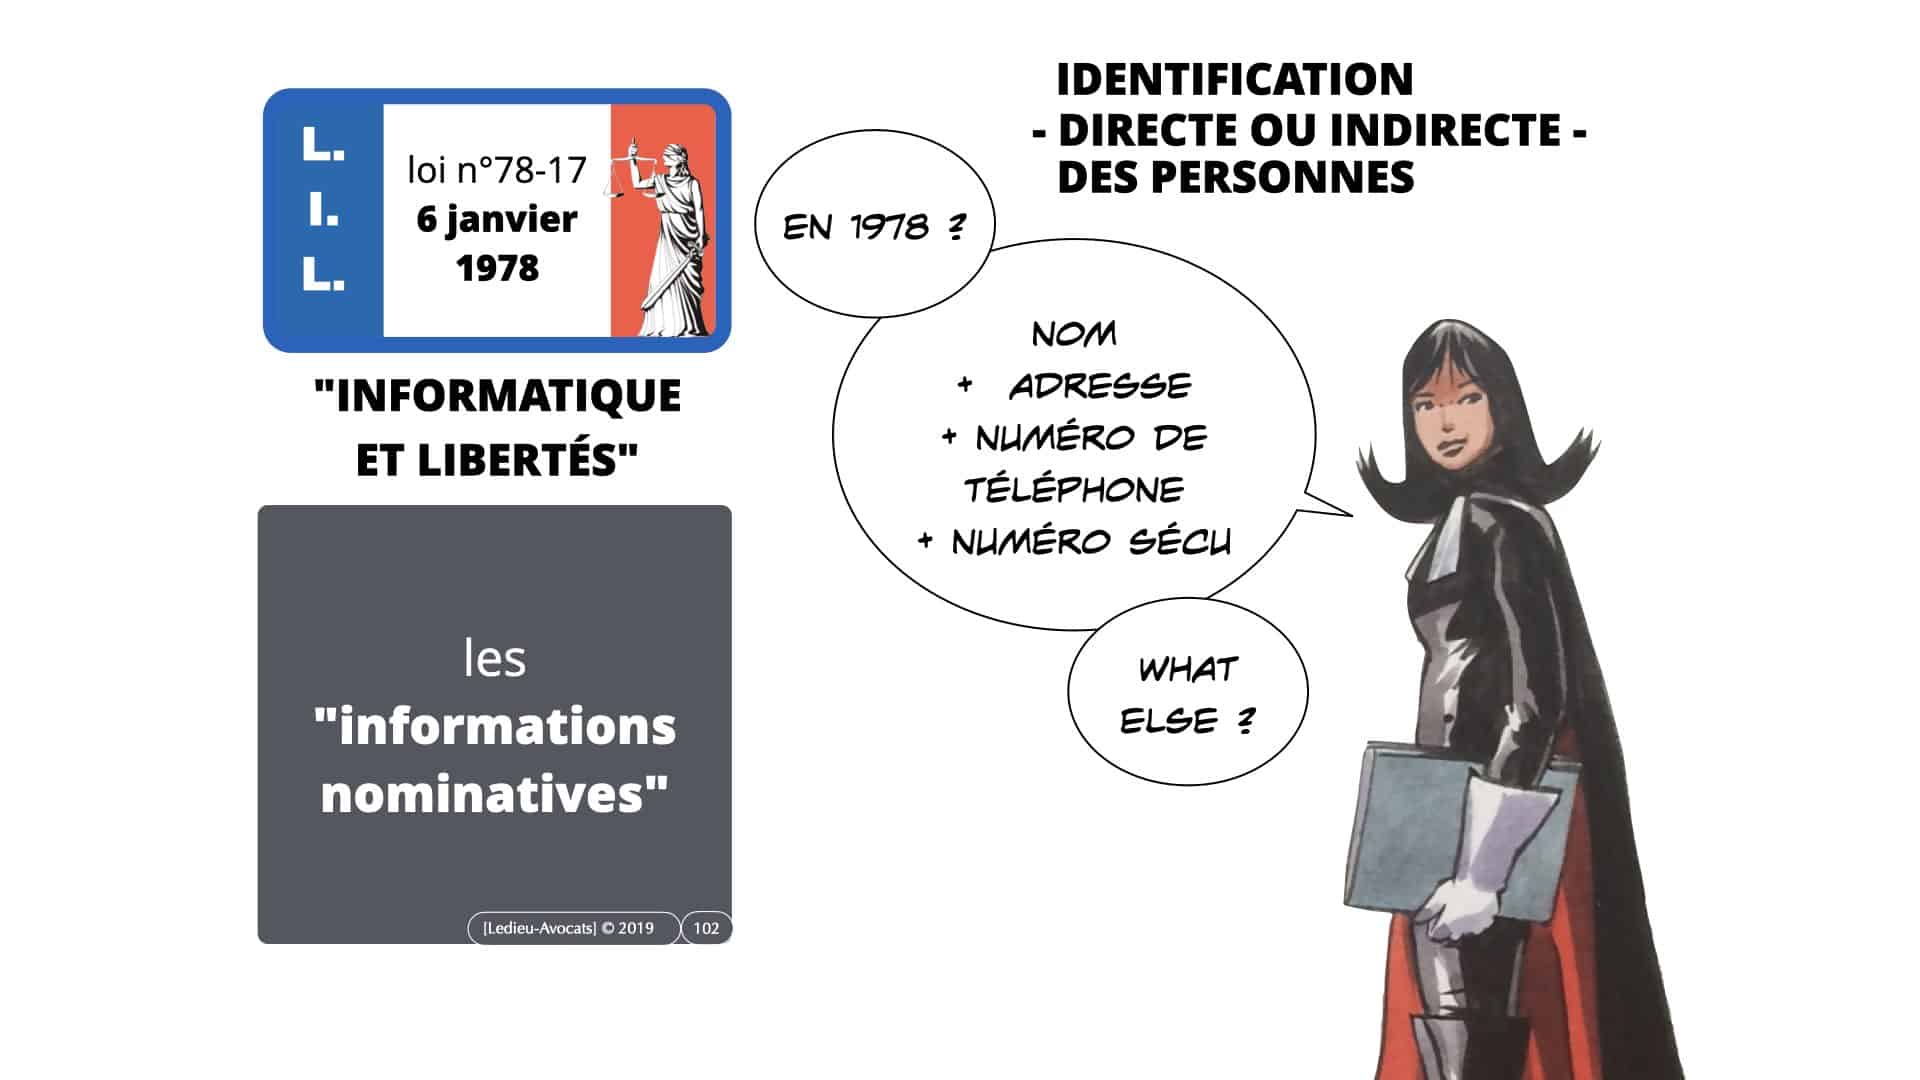 RGPD e-Privacy données personnelles jurisprudence formation Lamy Les Echos 10-02-2021 ©Ledieu-Avocats.102